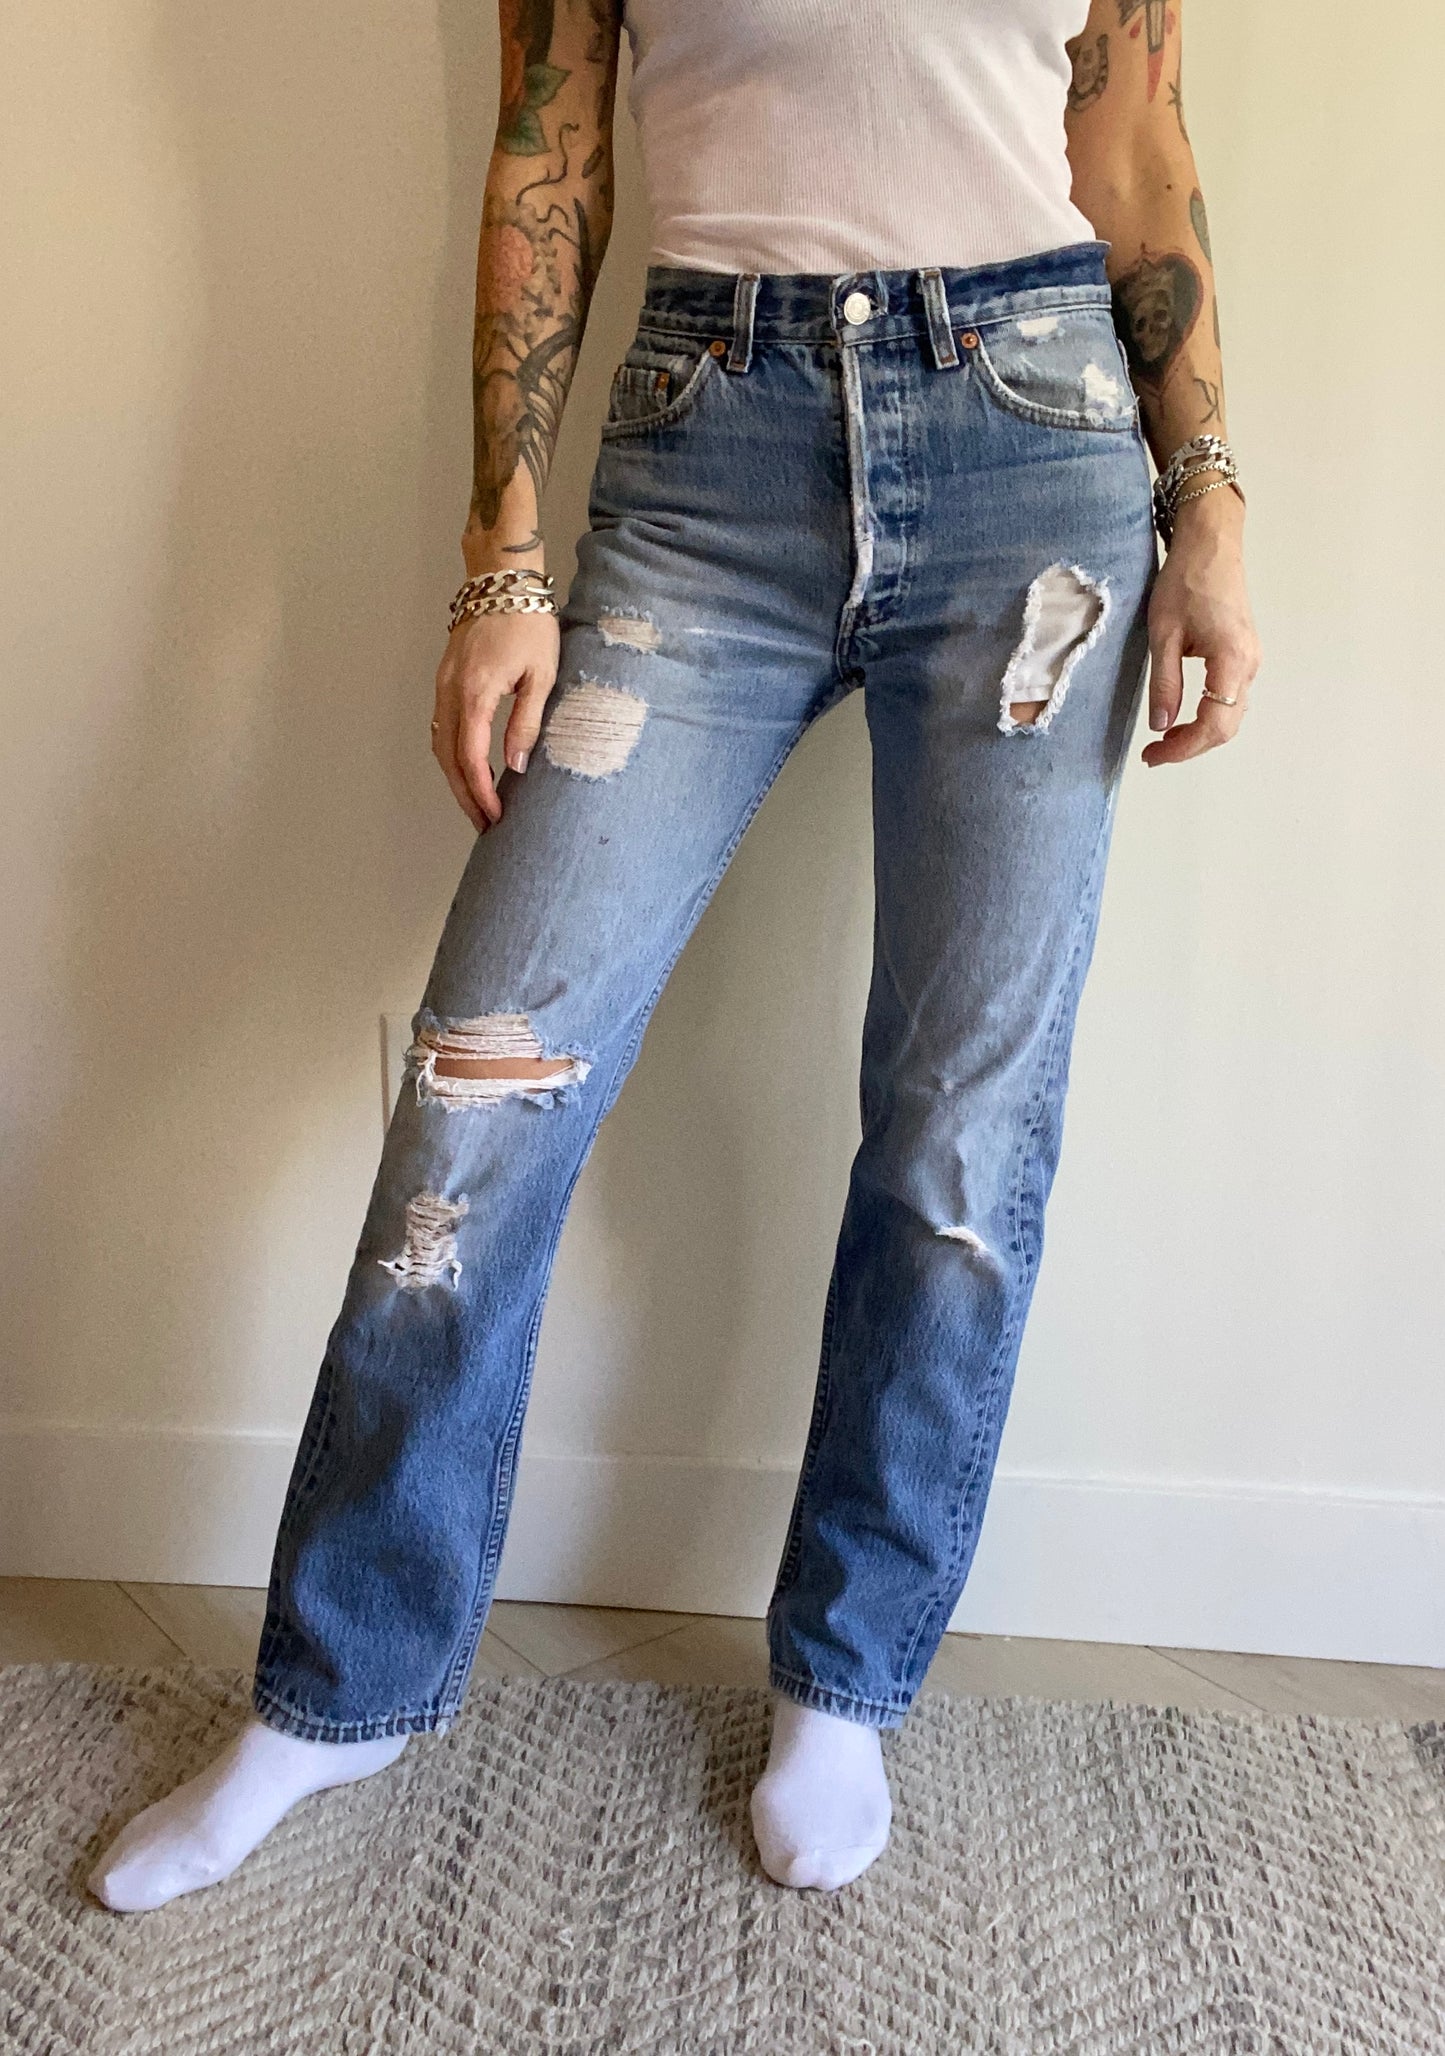 Size 26/27 Levi’s 501 jeans